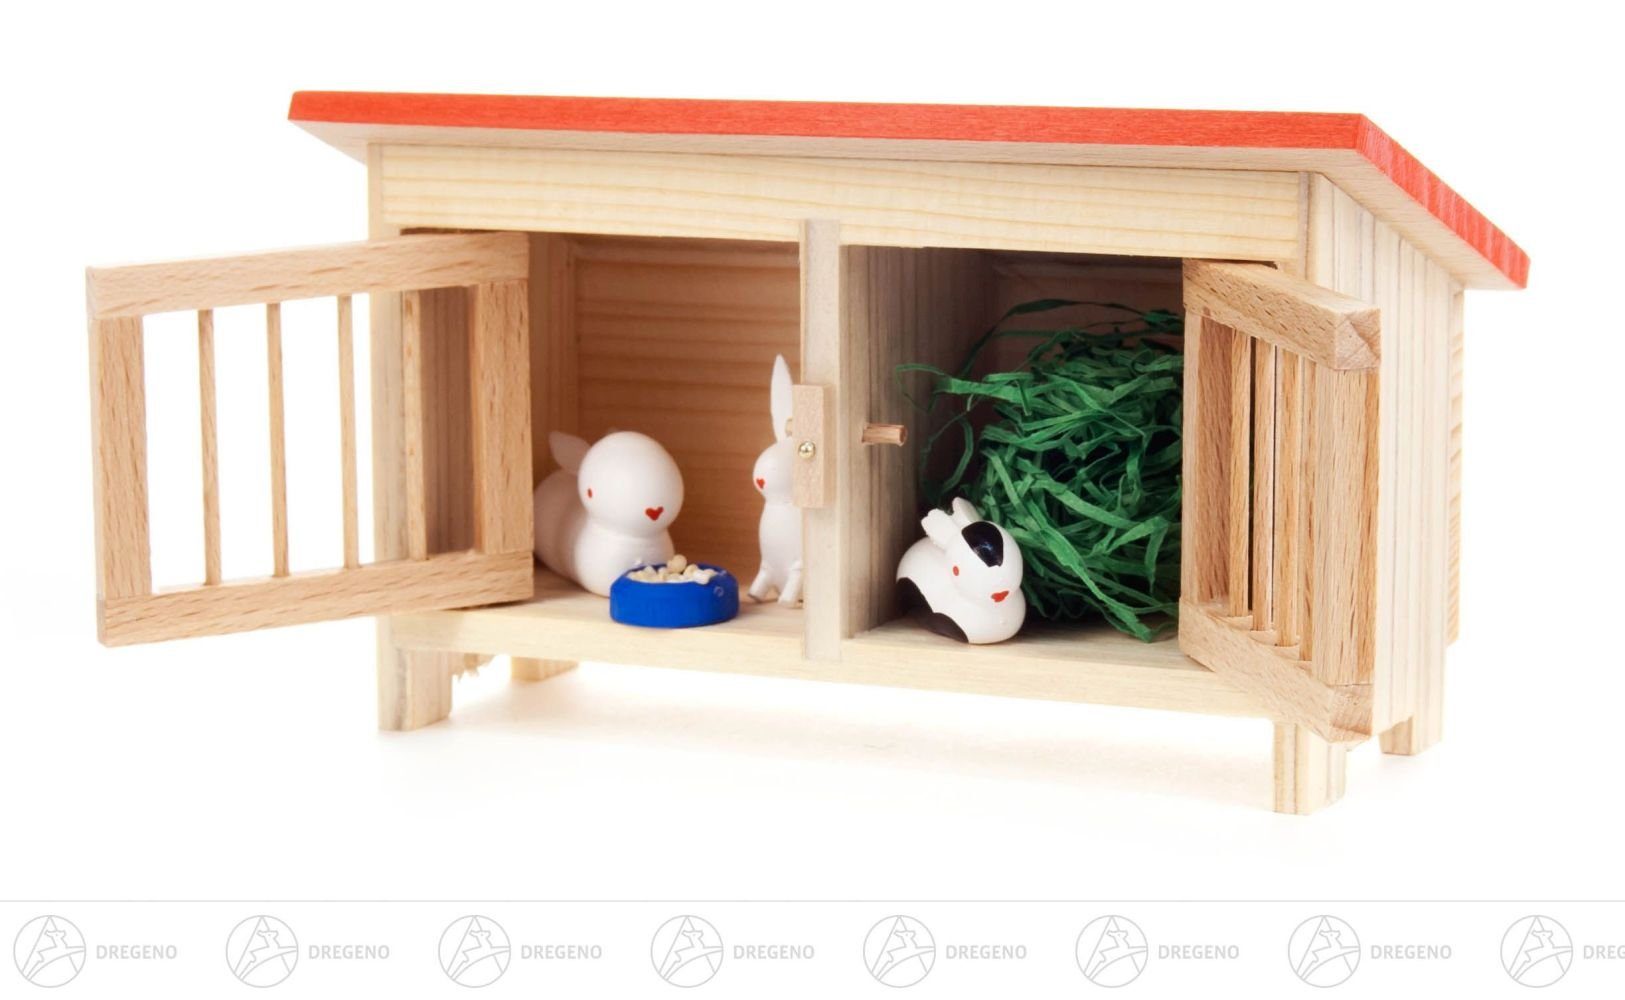 Dregeno Erzgebirge Weihnachtsfigur Miniatur Kleiner Hasenstall mit Hasen (5) Höhe ca 8 cm NEU, Türen lassen sich öffnen